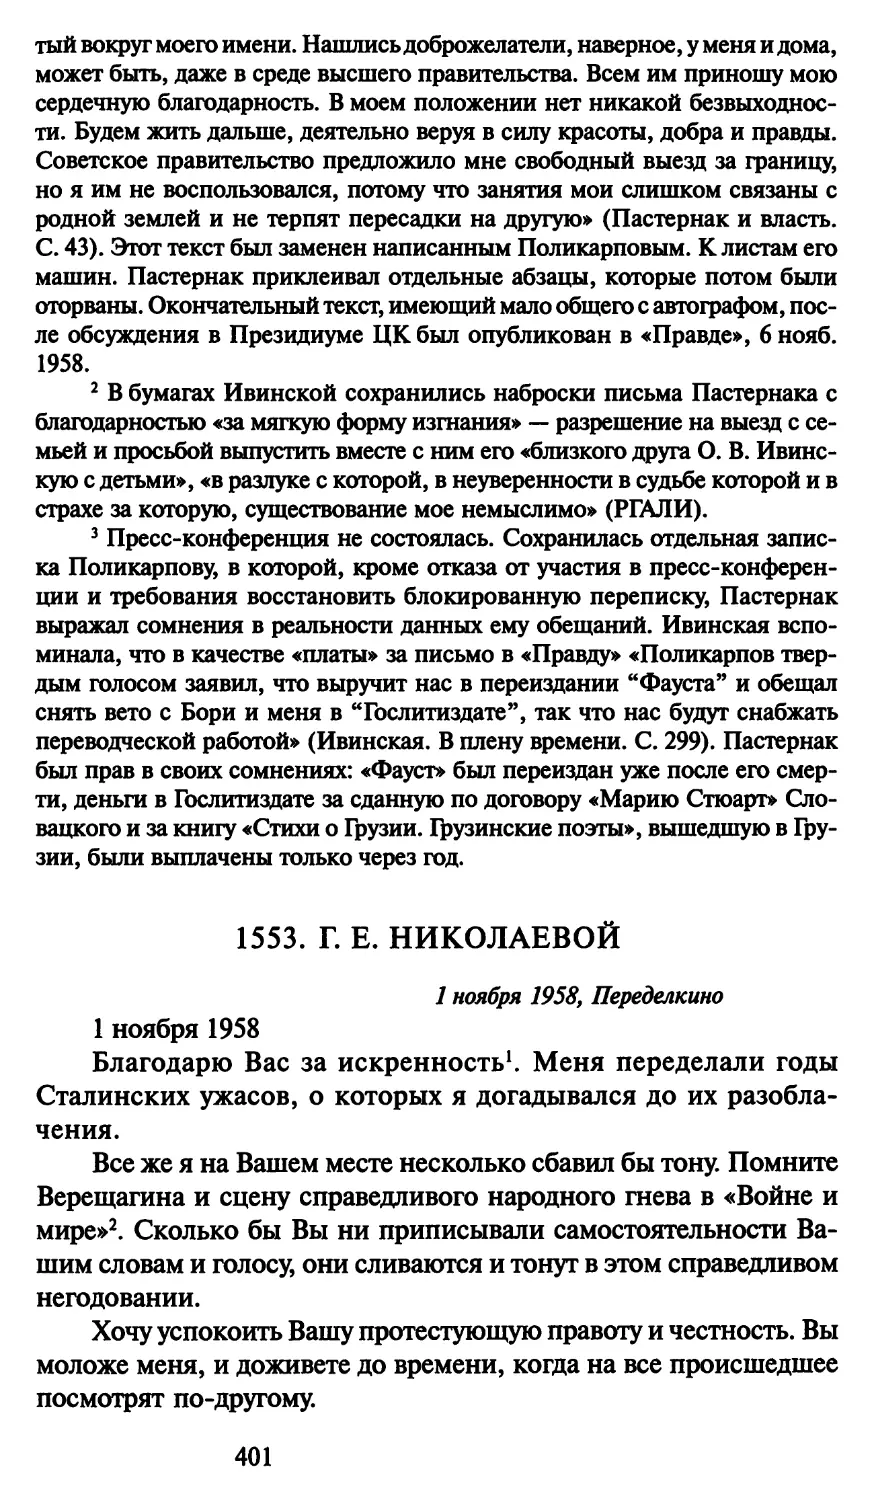 1553. Г. Е. Николаевой 1 ноября 1958